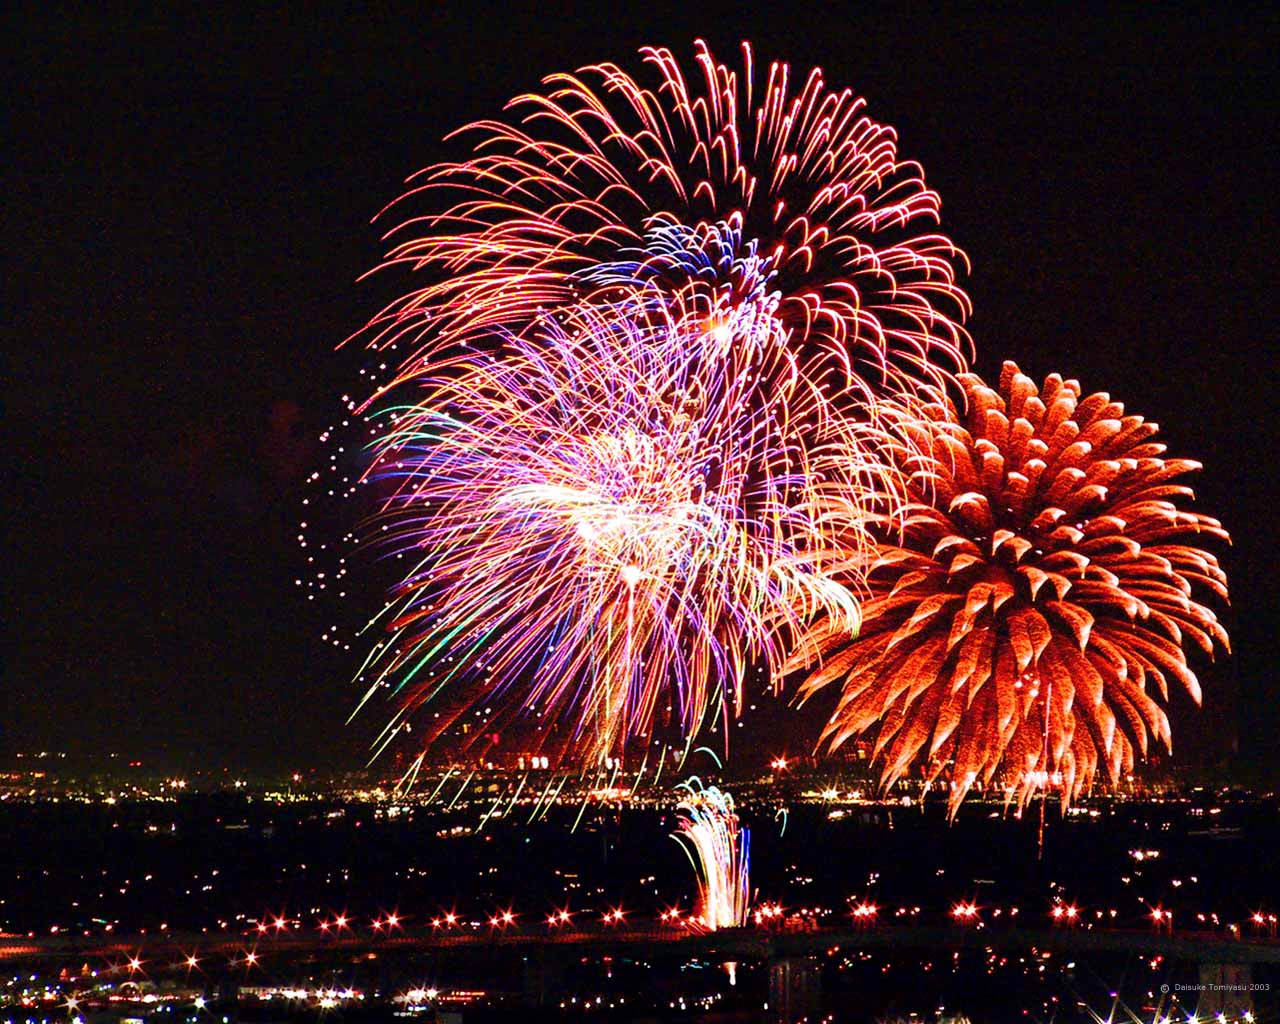 http://4.bp.blogspot.com/_FAktWGYlrJU/TR2Uk7NjQ-I/AAAAAAAAAxI/J7JbVW5eido/s1600/4th-of-july-fireworks.jpg